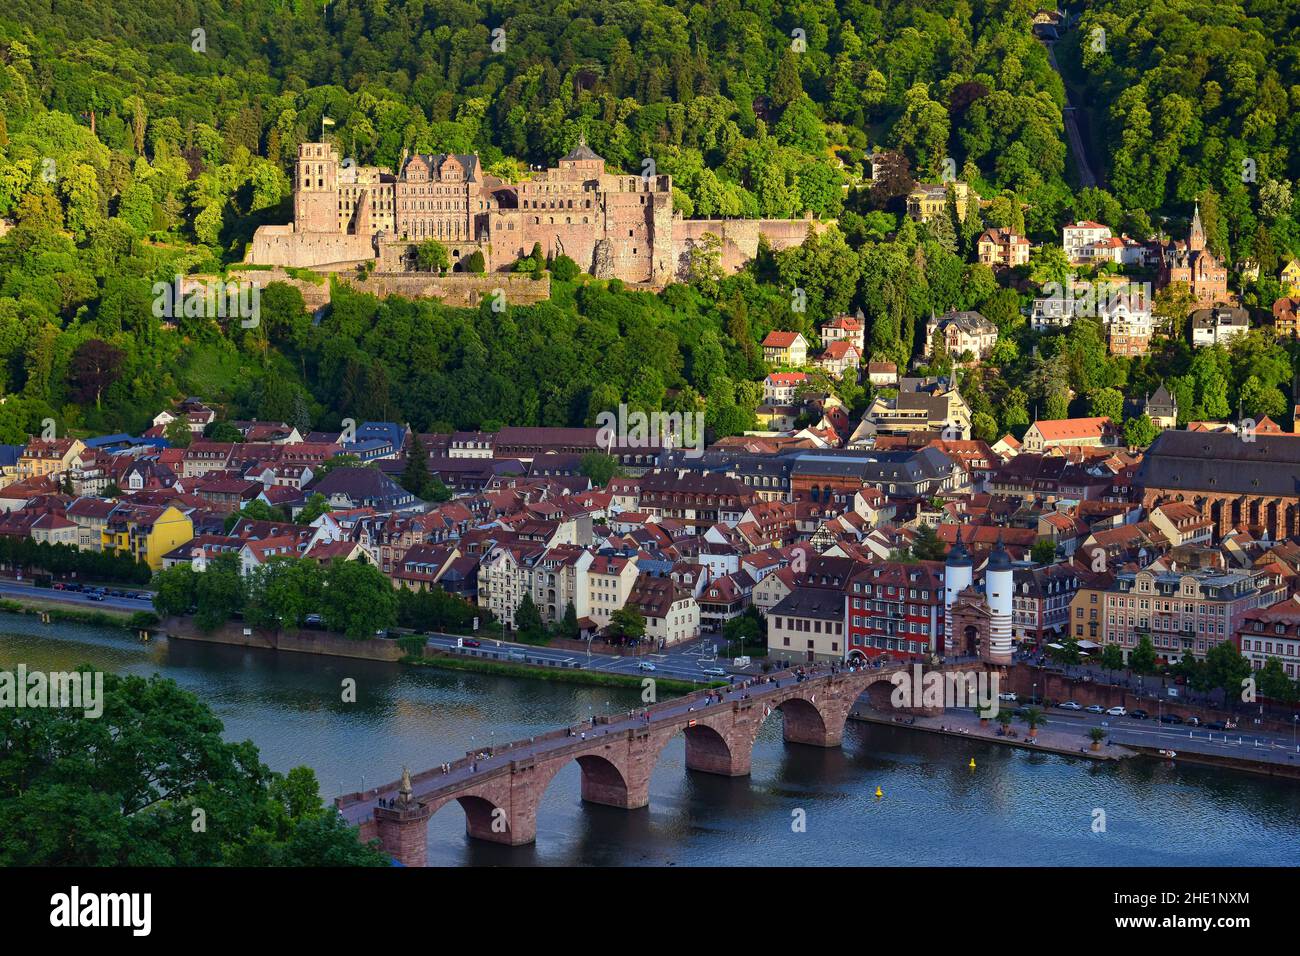 Die Altstadt von Heidelberg mit dem Schloss, der Alten Brücke, dem Neckar und dem Brückentor. Blick vom Philosophenweg. Deutschland. Stockfoto